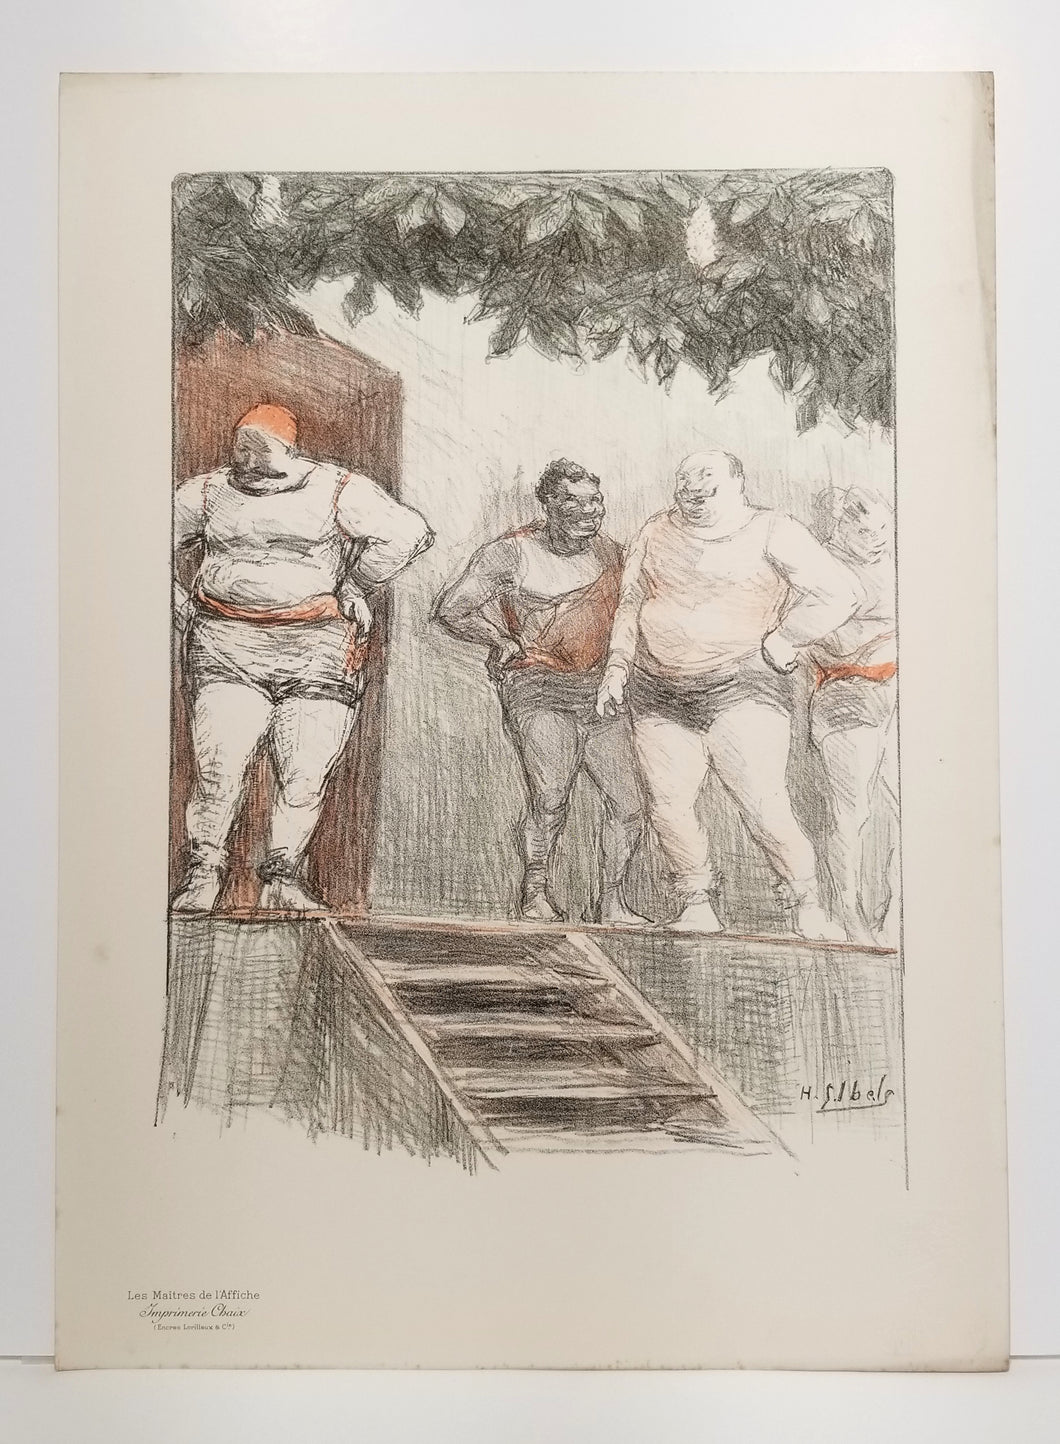 [Les lutteurs]. Sujet original par Ibels pour les Maîtres de l'affiche. 1898.